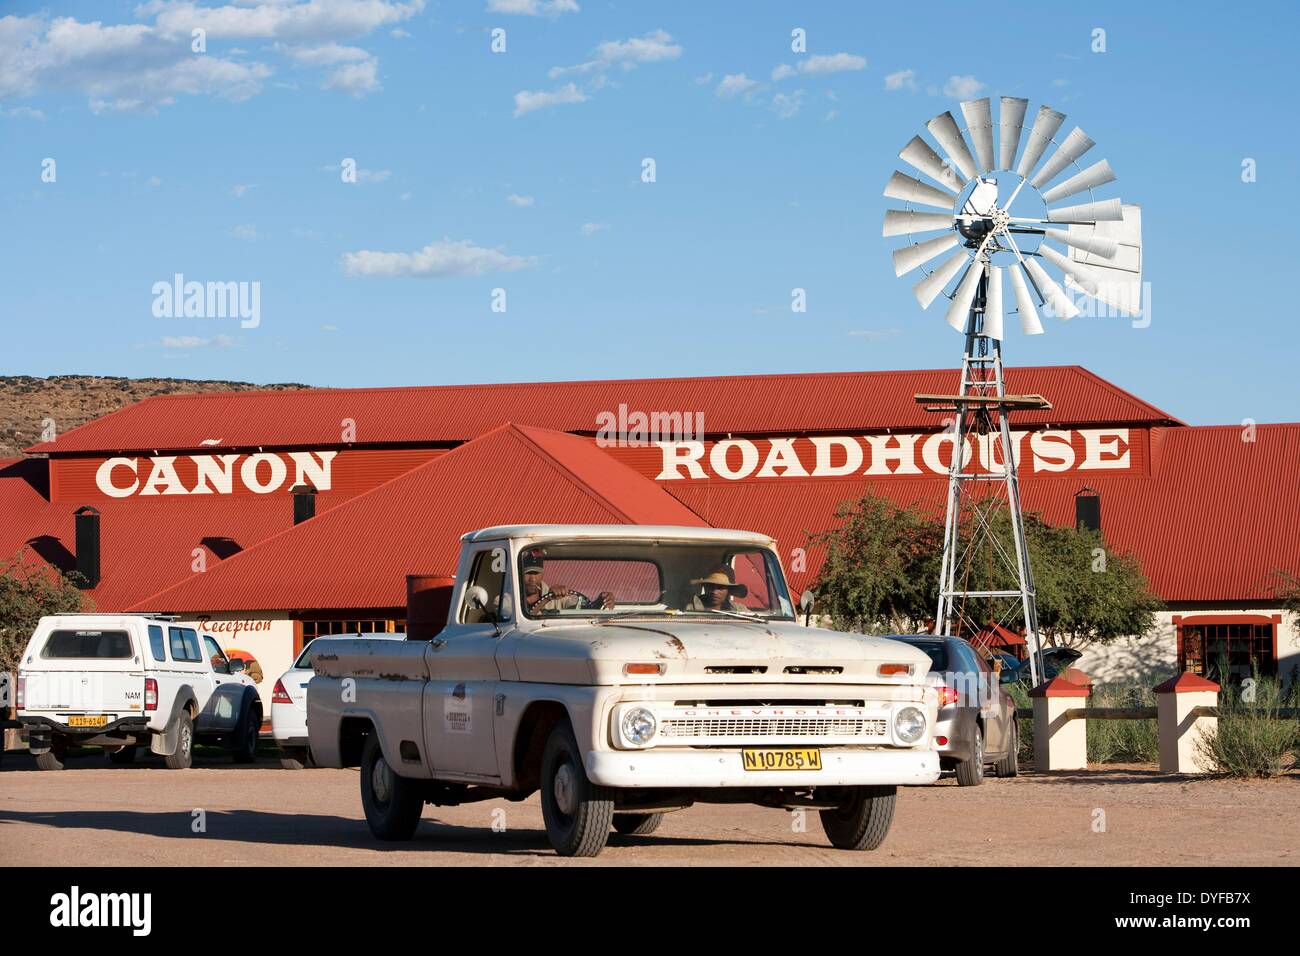 Die Canon Roadhouse ist ein Restaurant-, Hotel- und Autobahn Station auf dem Weg zum Fish River Canyon im Süden Namibias, 7. Januar 2011. Foto: Tom Schulze - kein Draht-SERVICE – Stockfoto